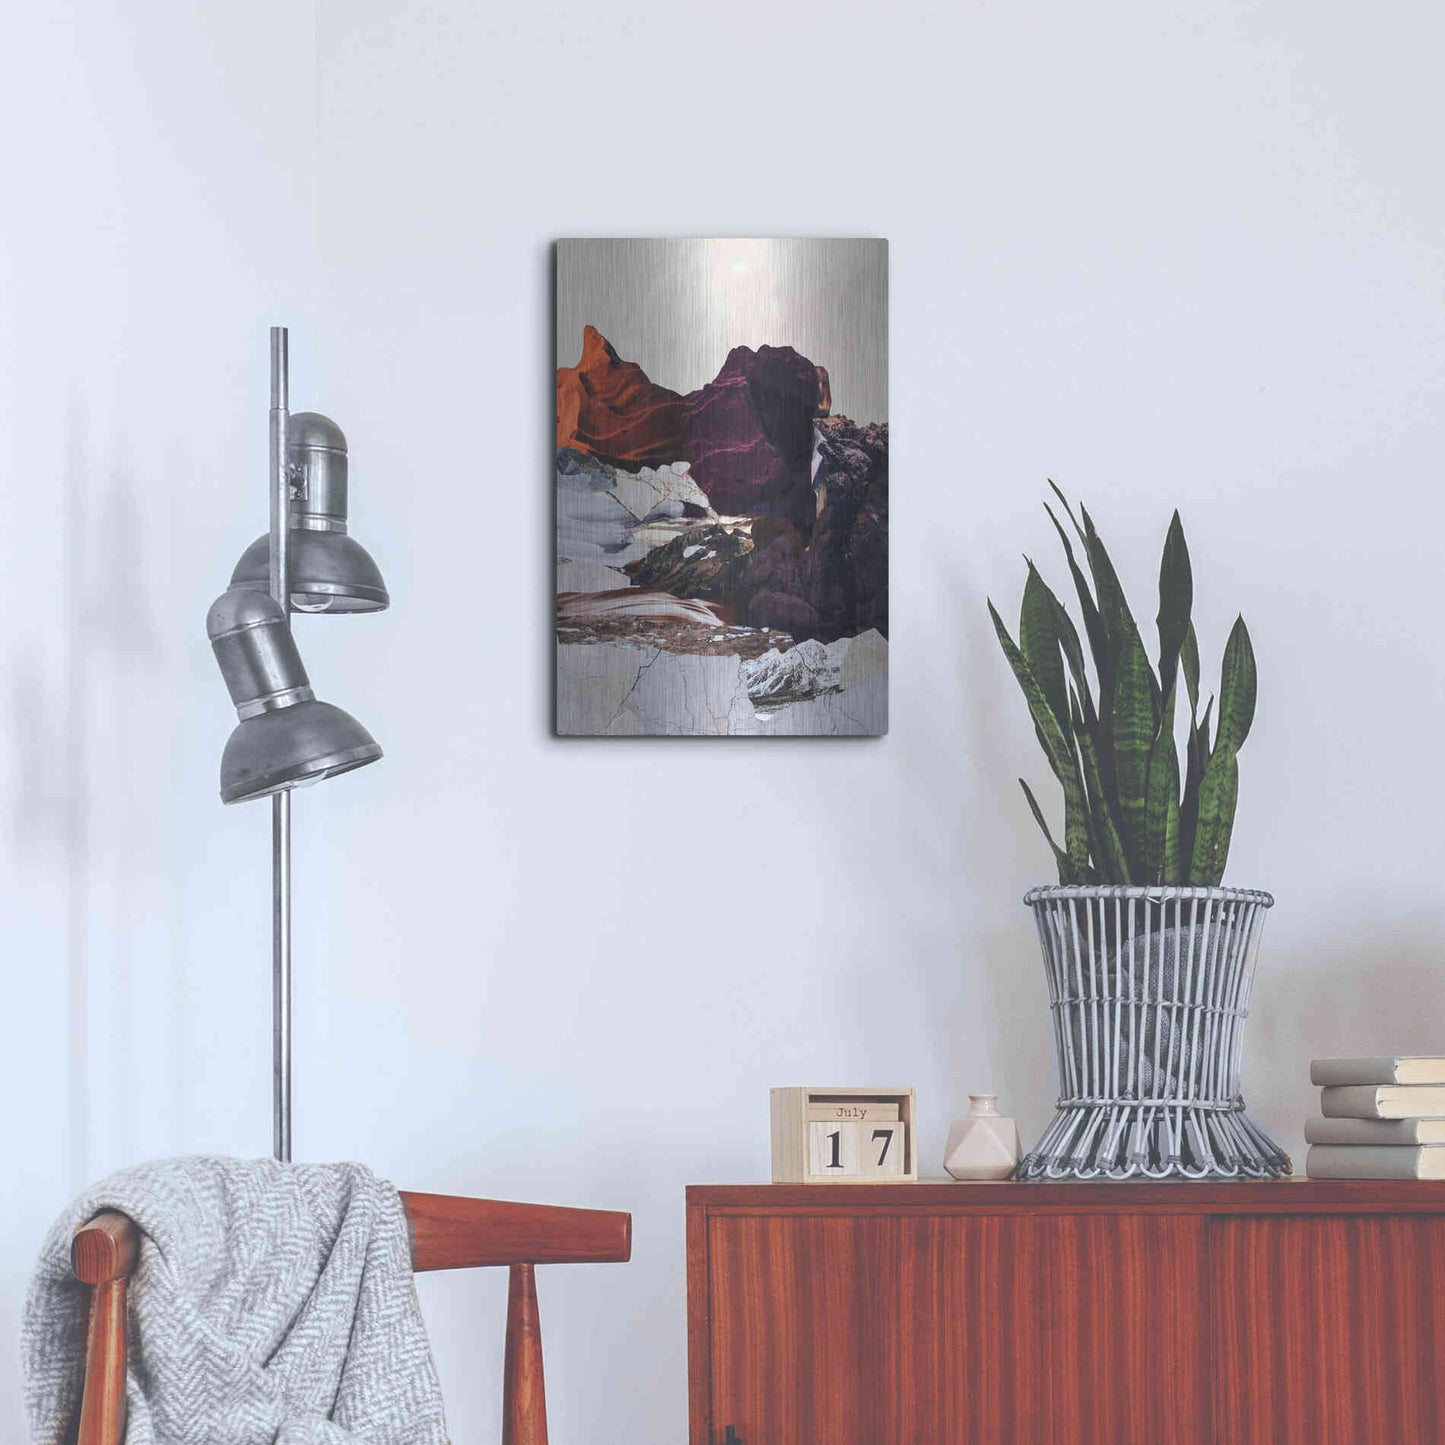 Luxe Metal Art 'New Era 2' by Design Fabrikken, Metal Wall Art,16x24